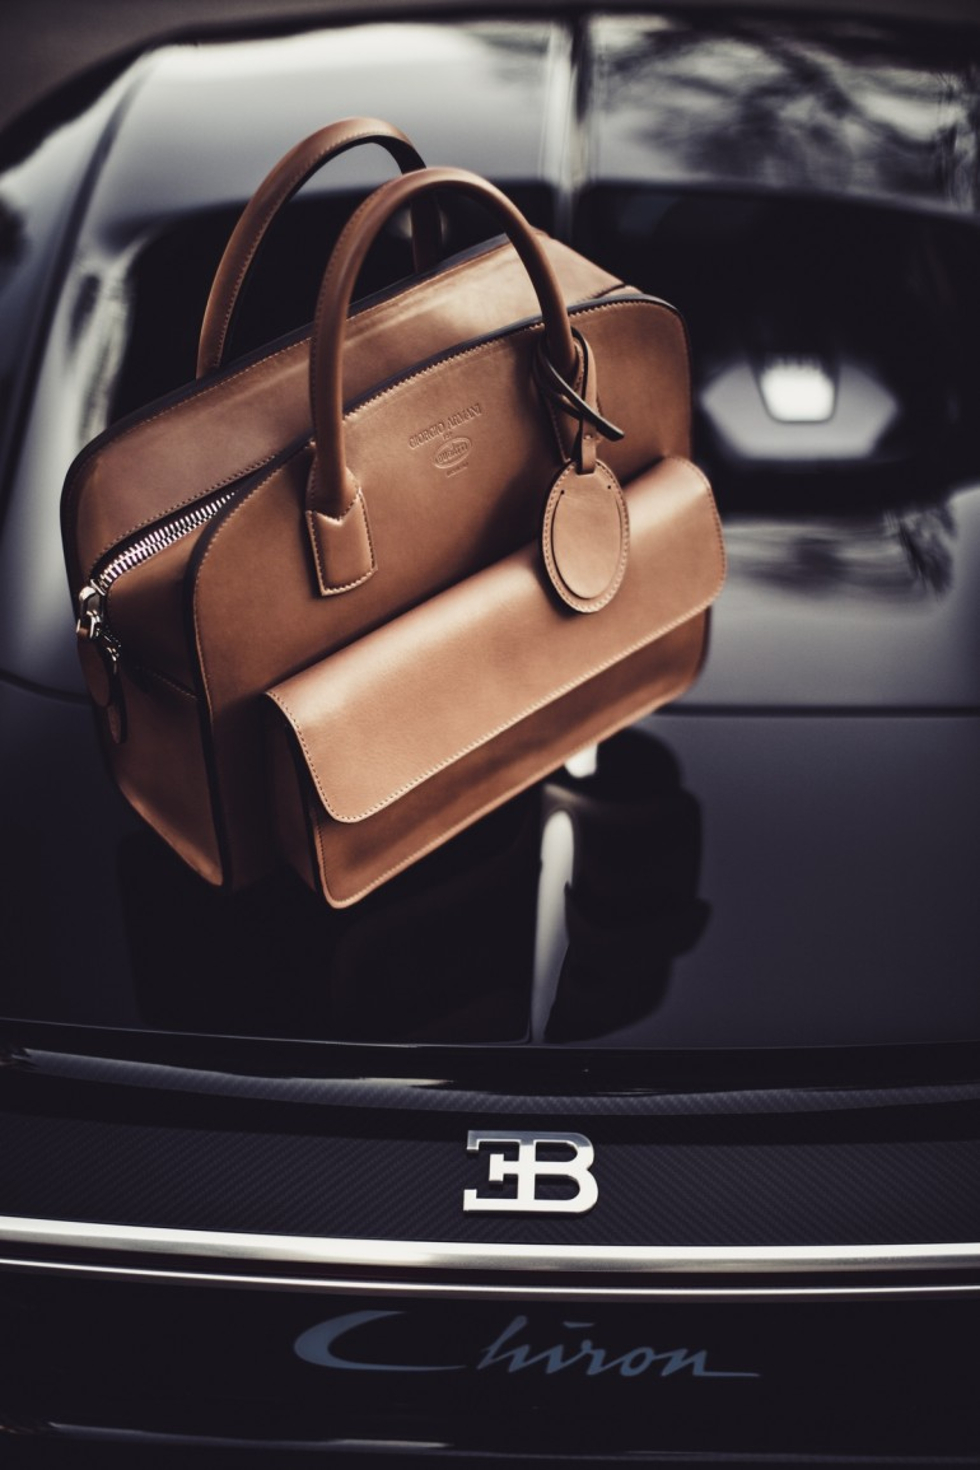 Bolsa de couro desenvolvida pela Armani em parceria com a Bugatti (Foto: Divulgação)